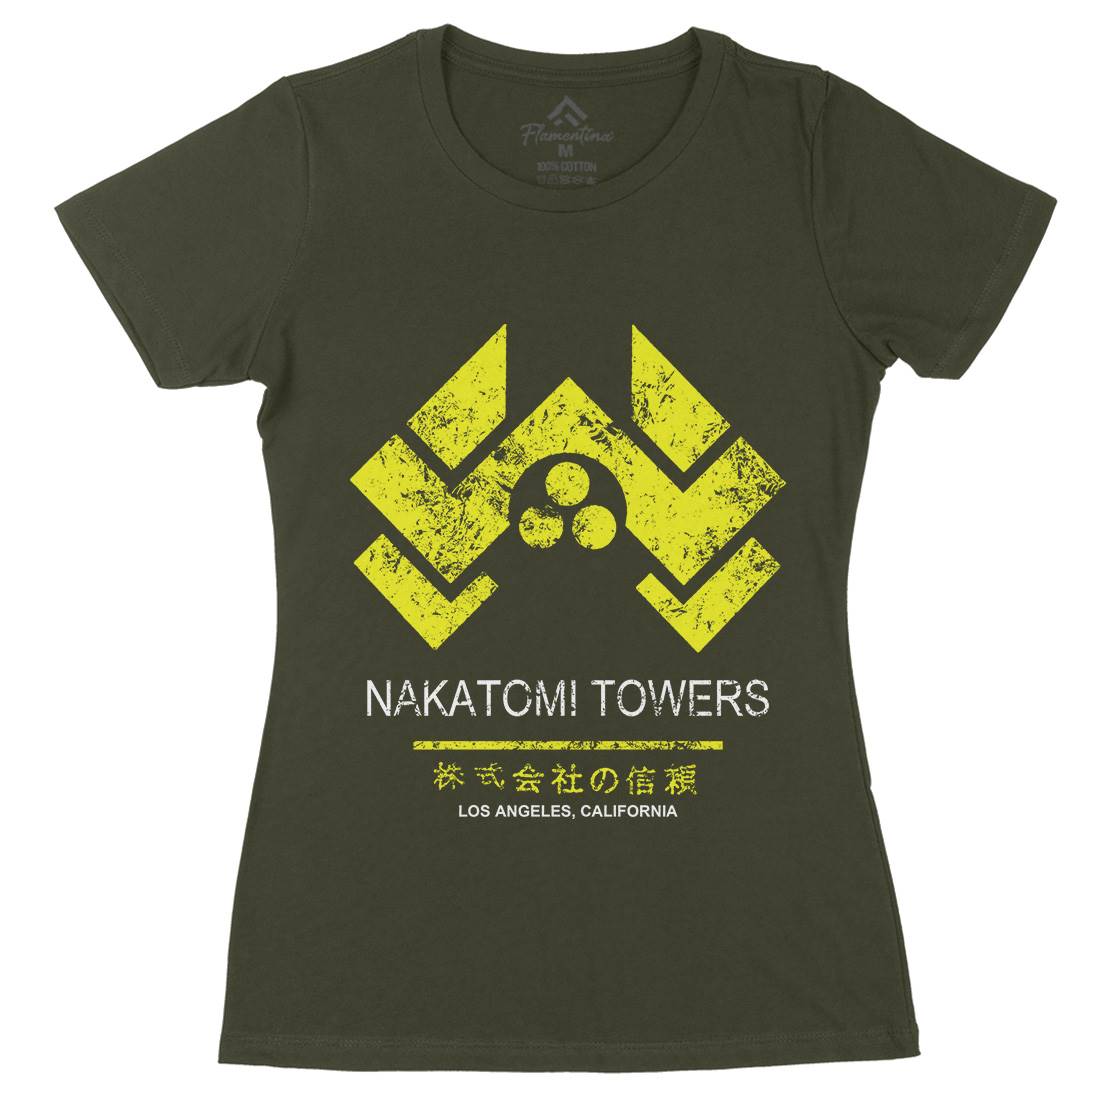 Nakatomi Tower Womens Organic Crew Neck T-Shirt Retro D430